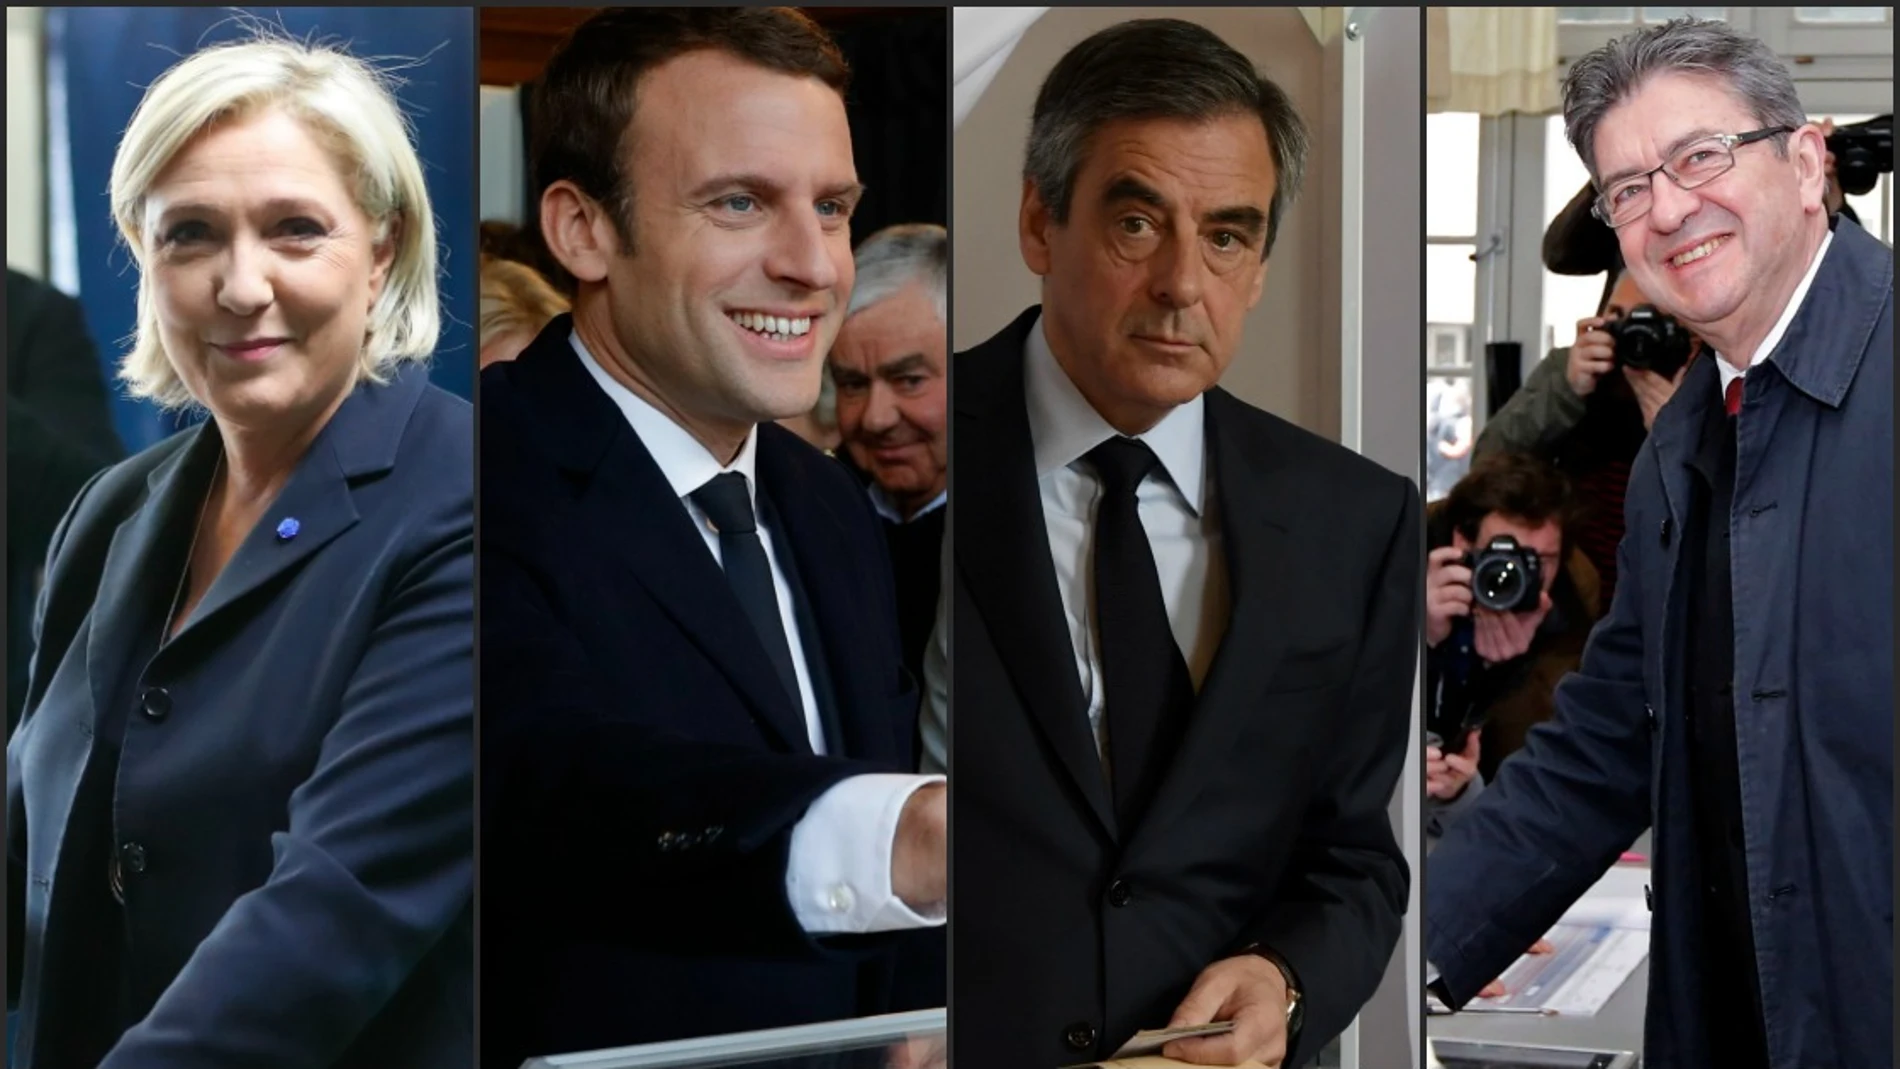 Los candidatos en las presidenciales francesas votan